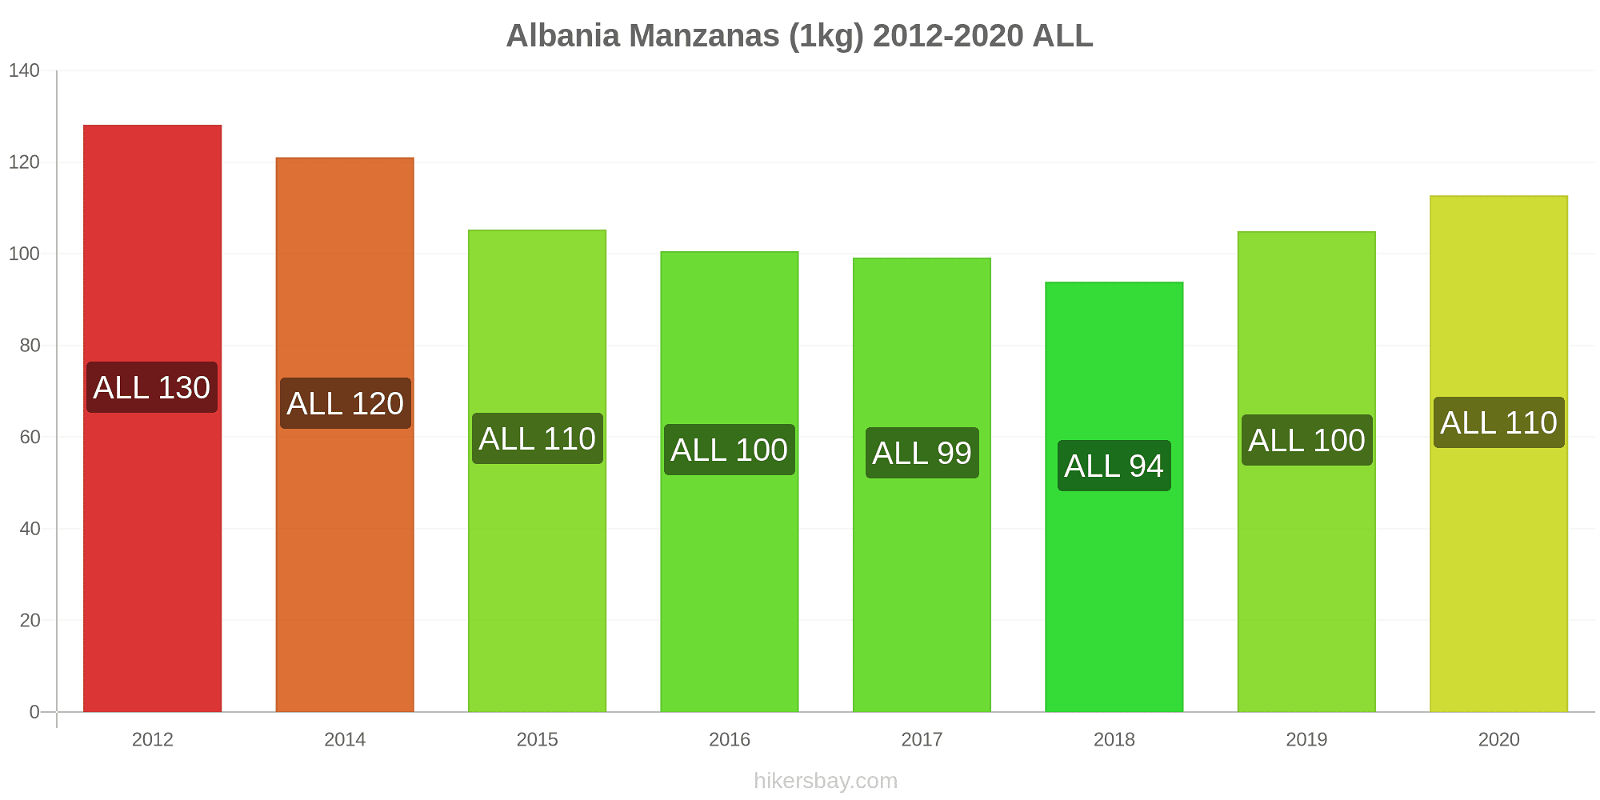 Albania cambios de precios Manzanas (1kg) hikersbay.com